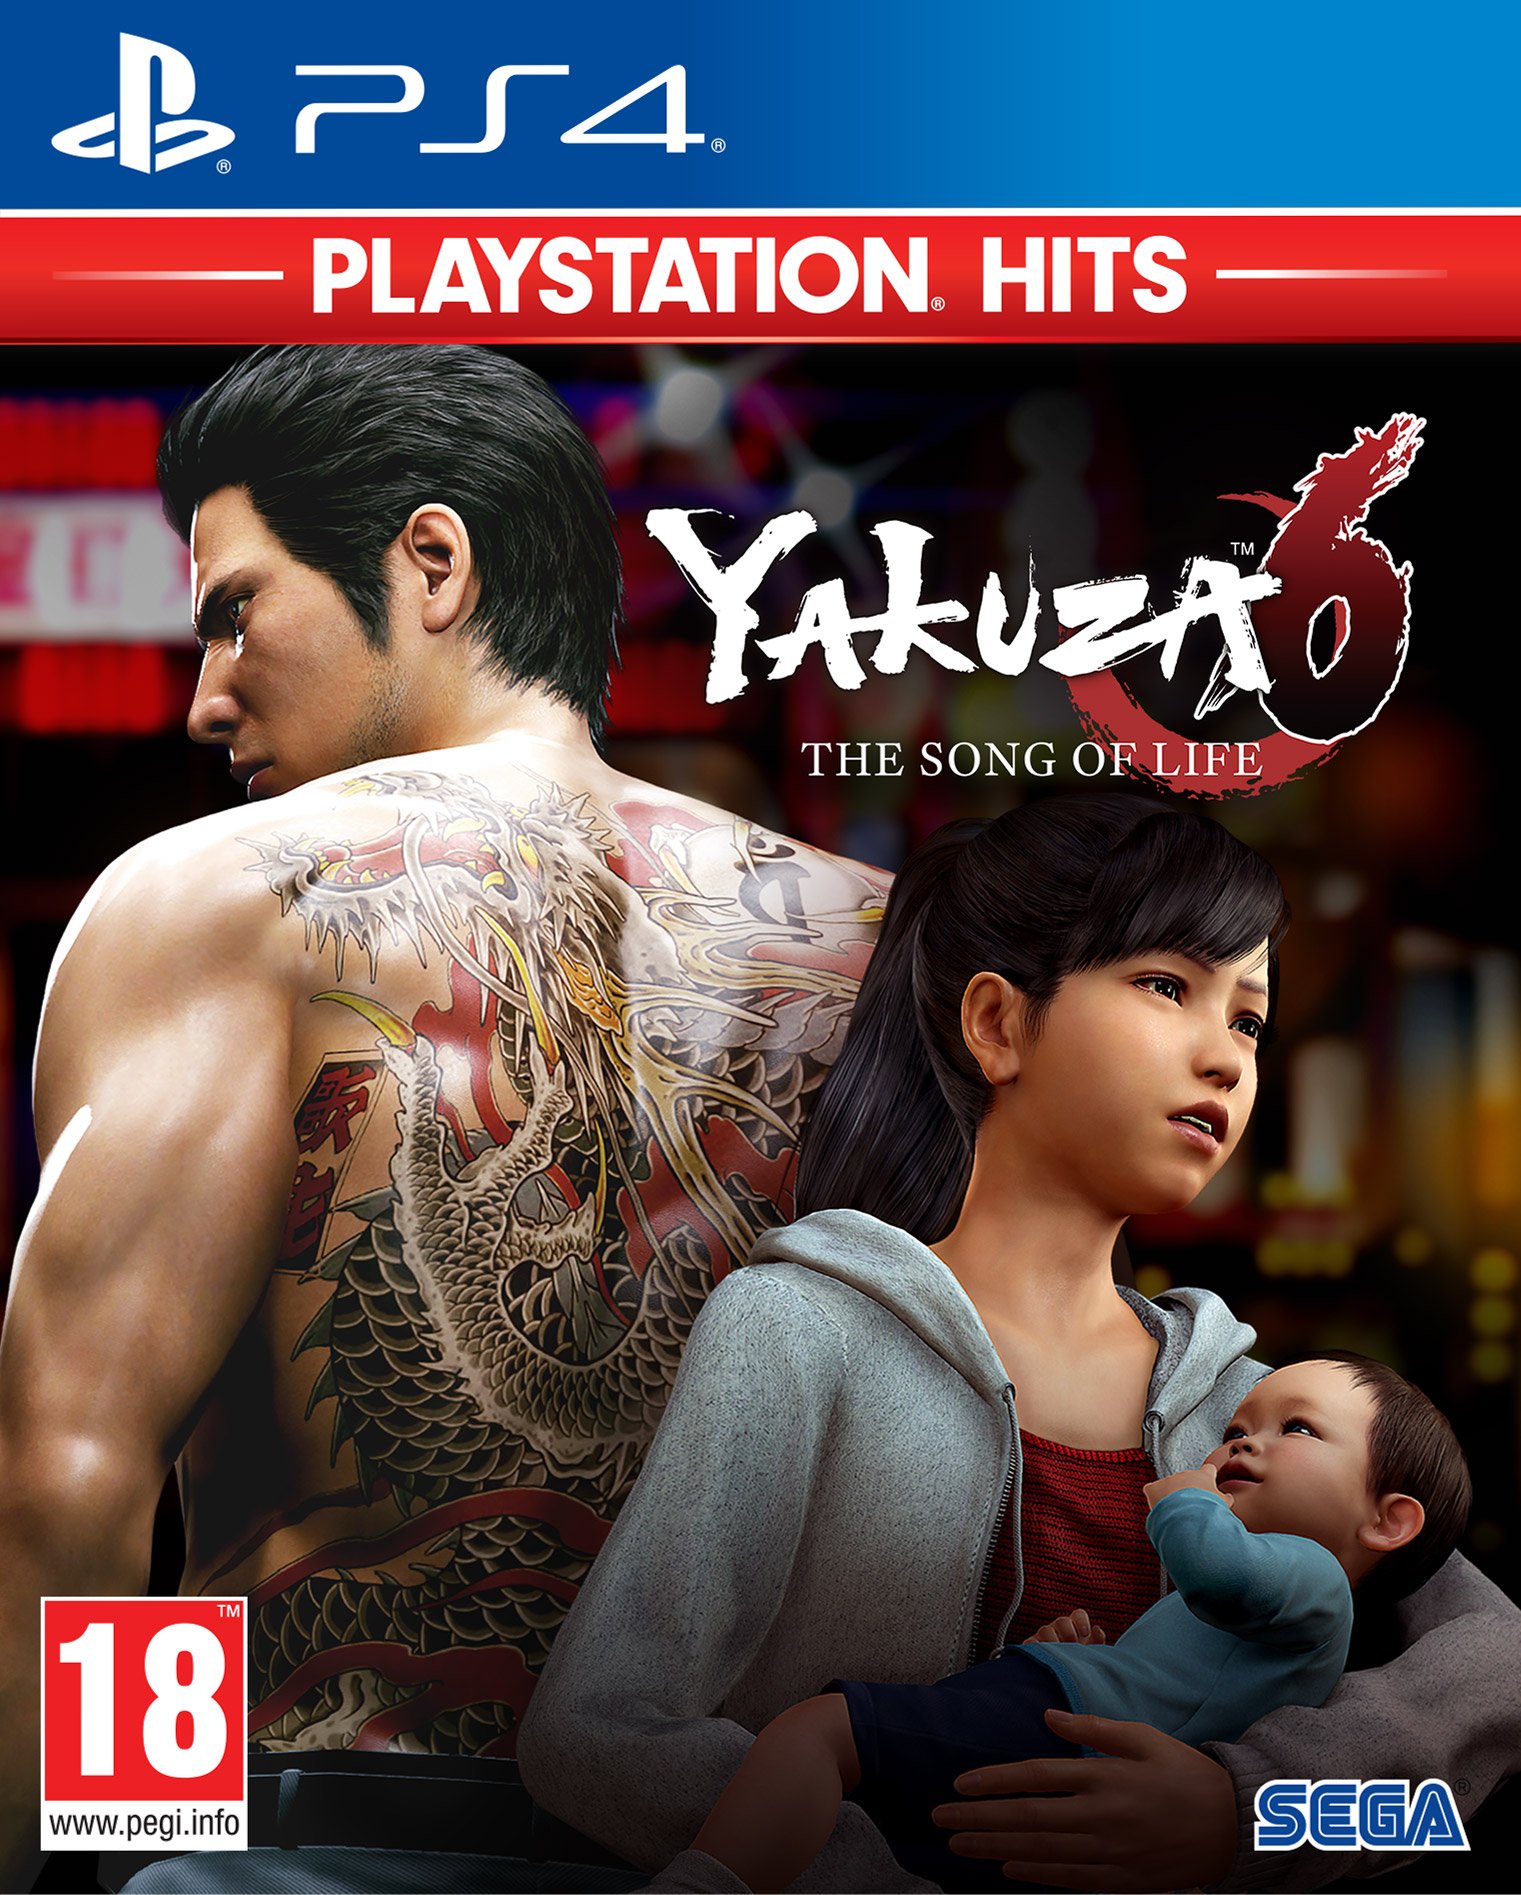 Yakuza 6: The Song of Life (PlayStation Hits) von Sega Games